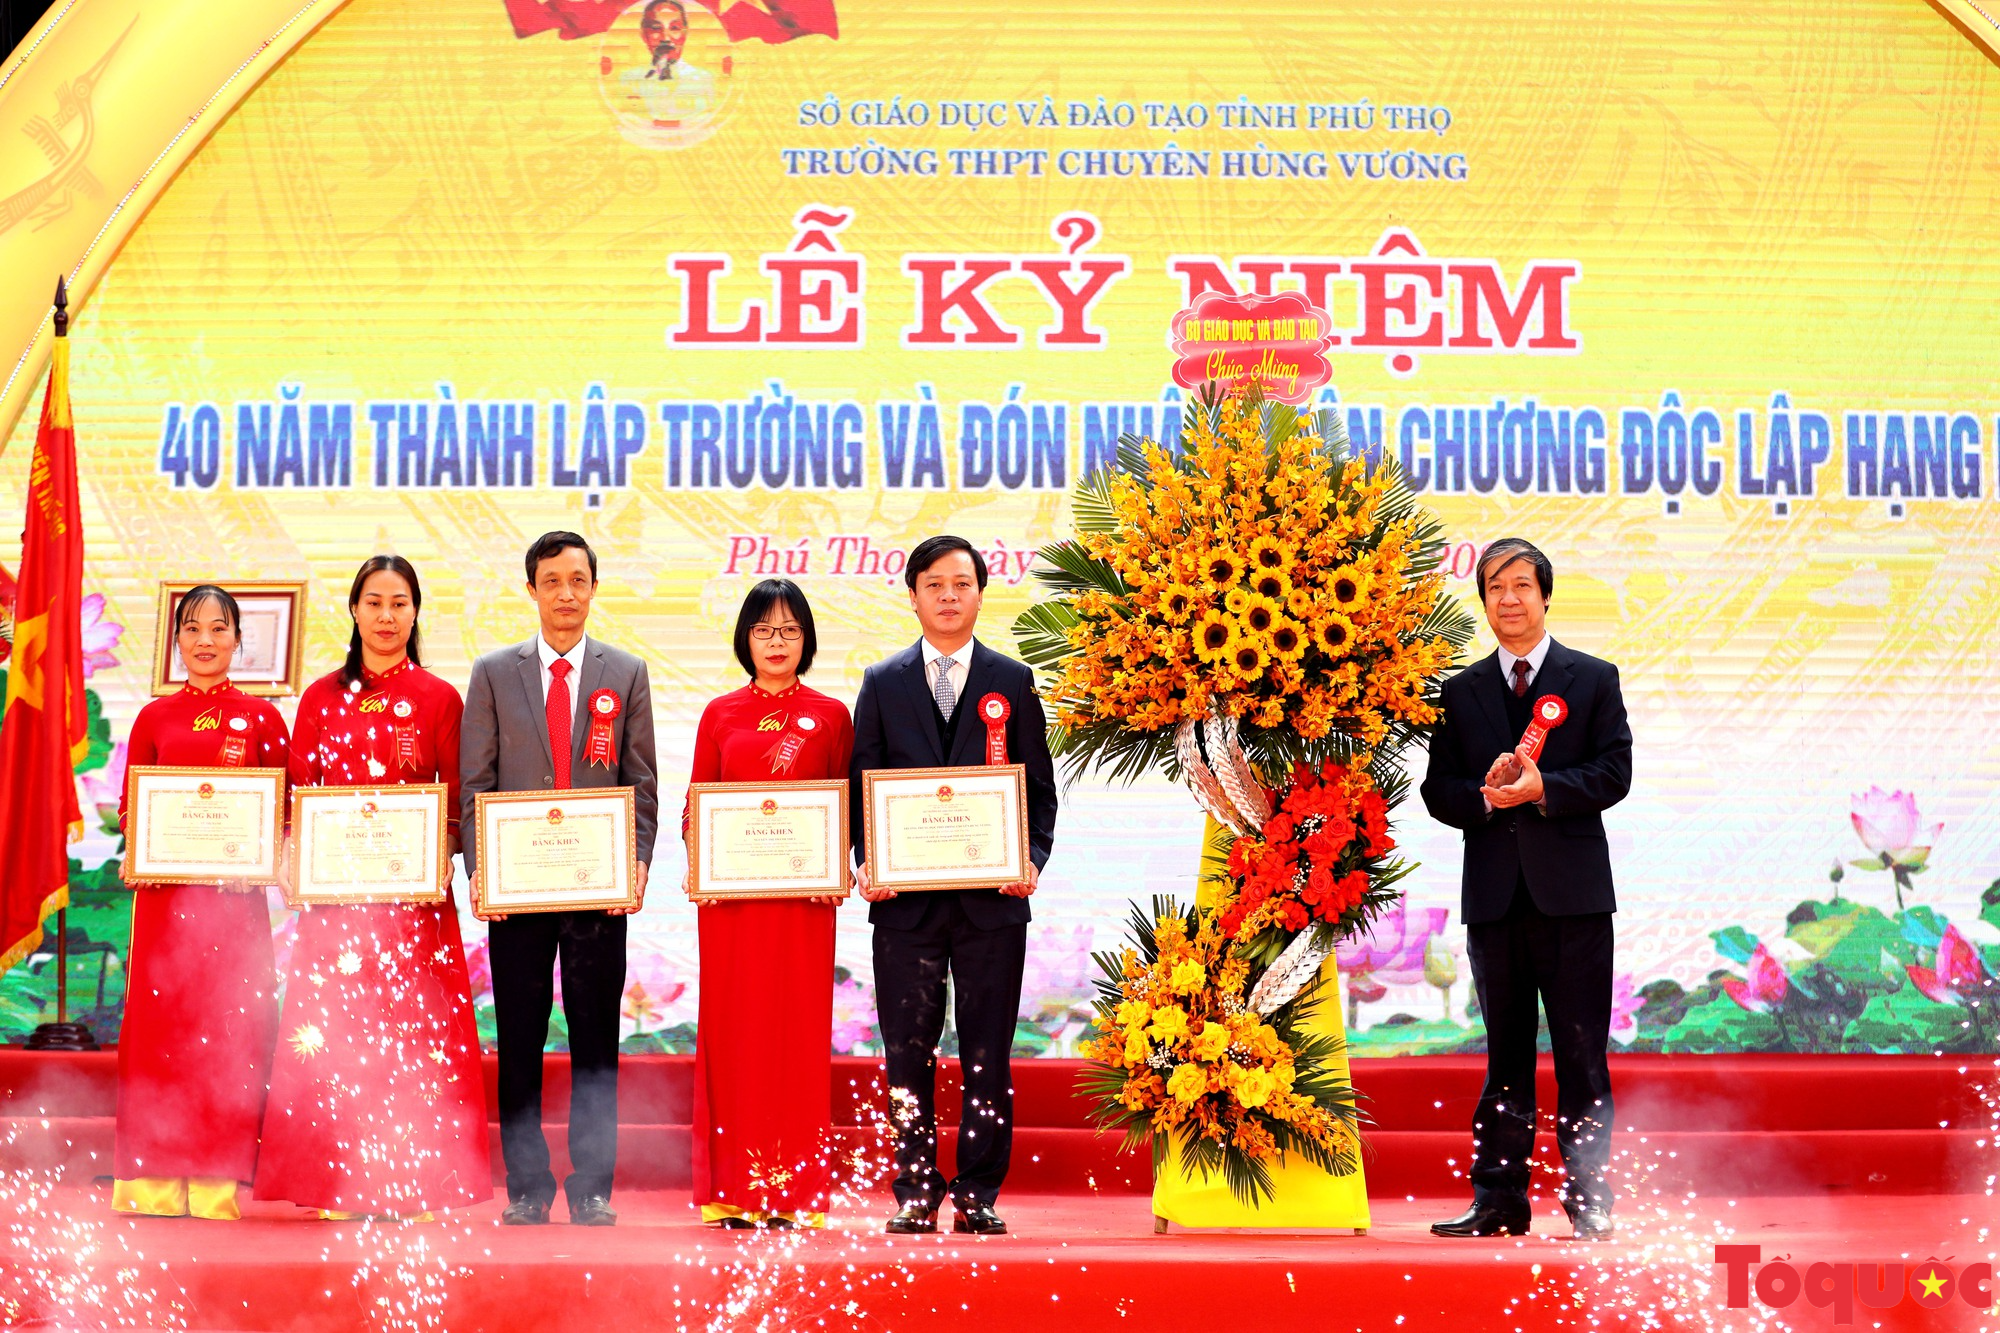 Trường THPT Chuyên Hùng Vương kỷ niệm 40 năm thành lập và đón nhận Huân chương Độc lập hạng Nhì - Ảnh 11.